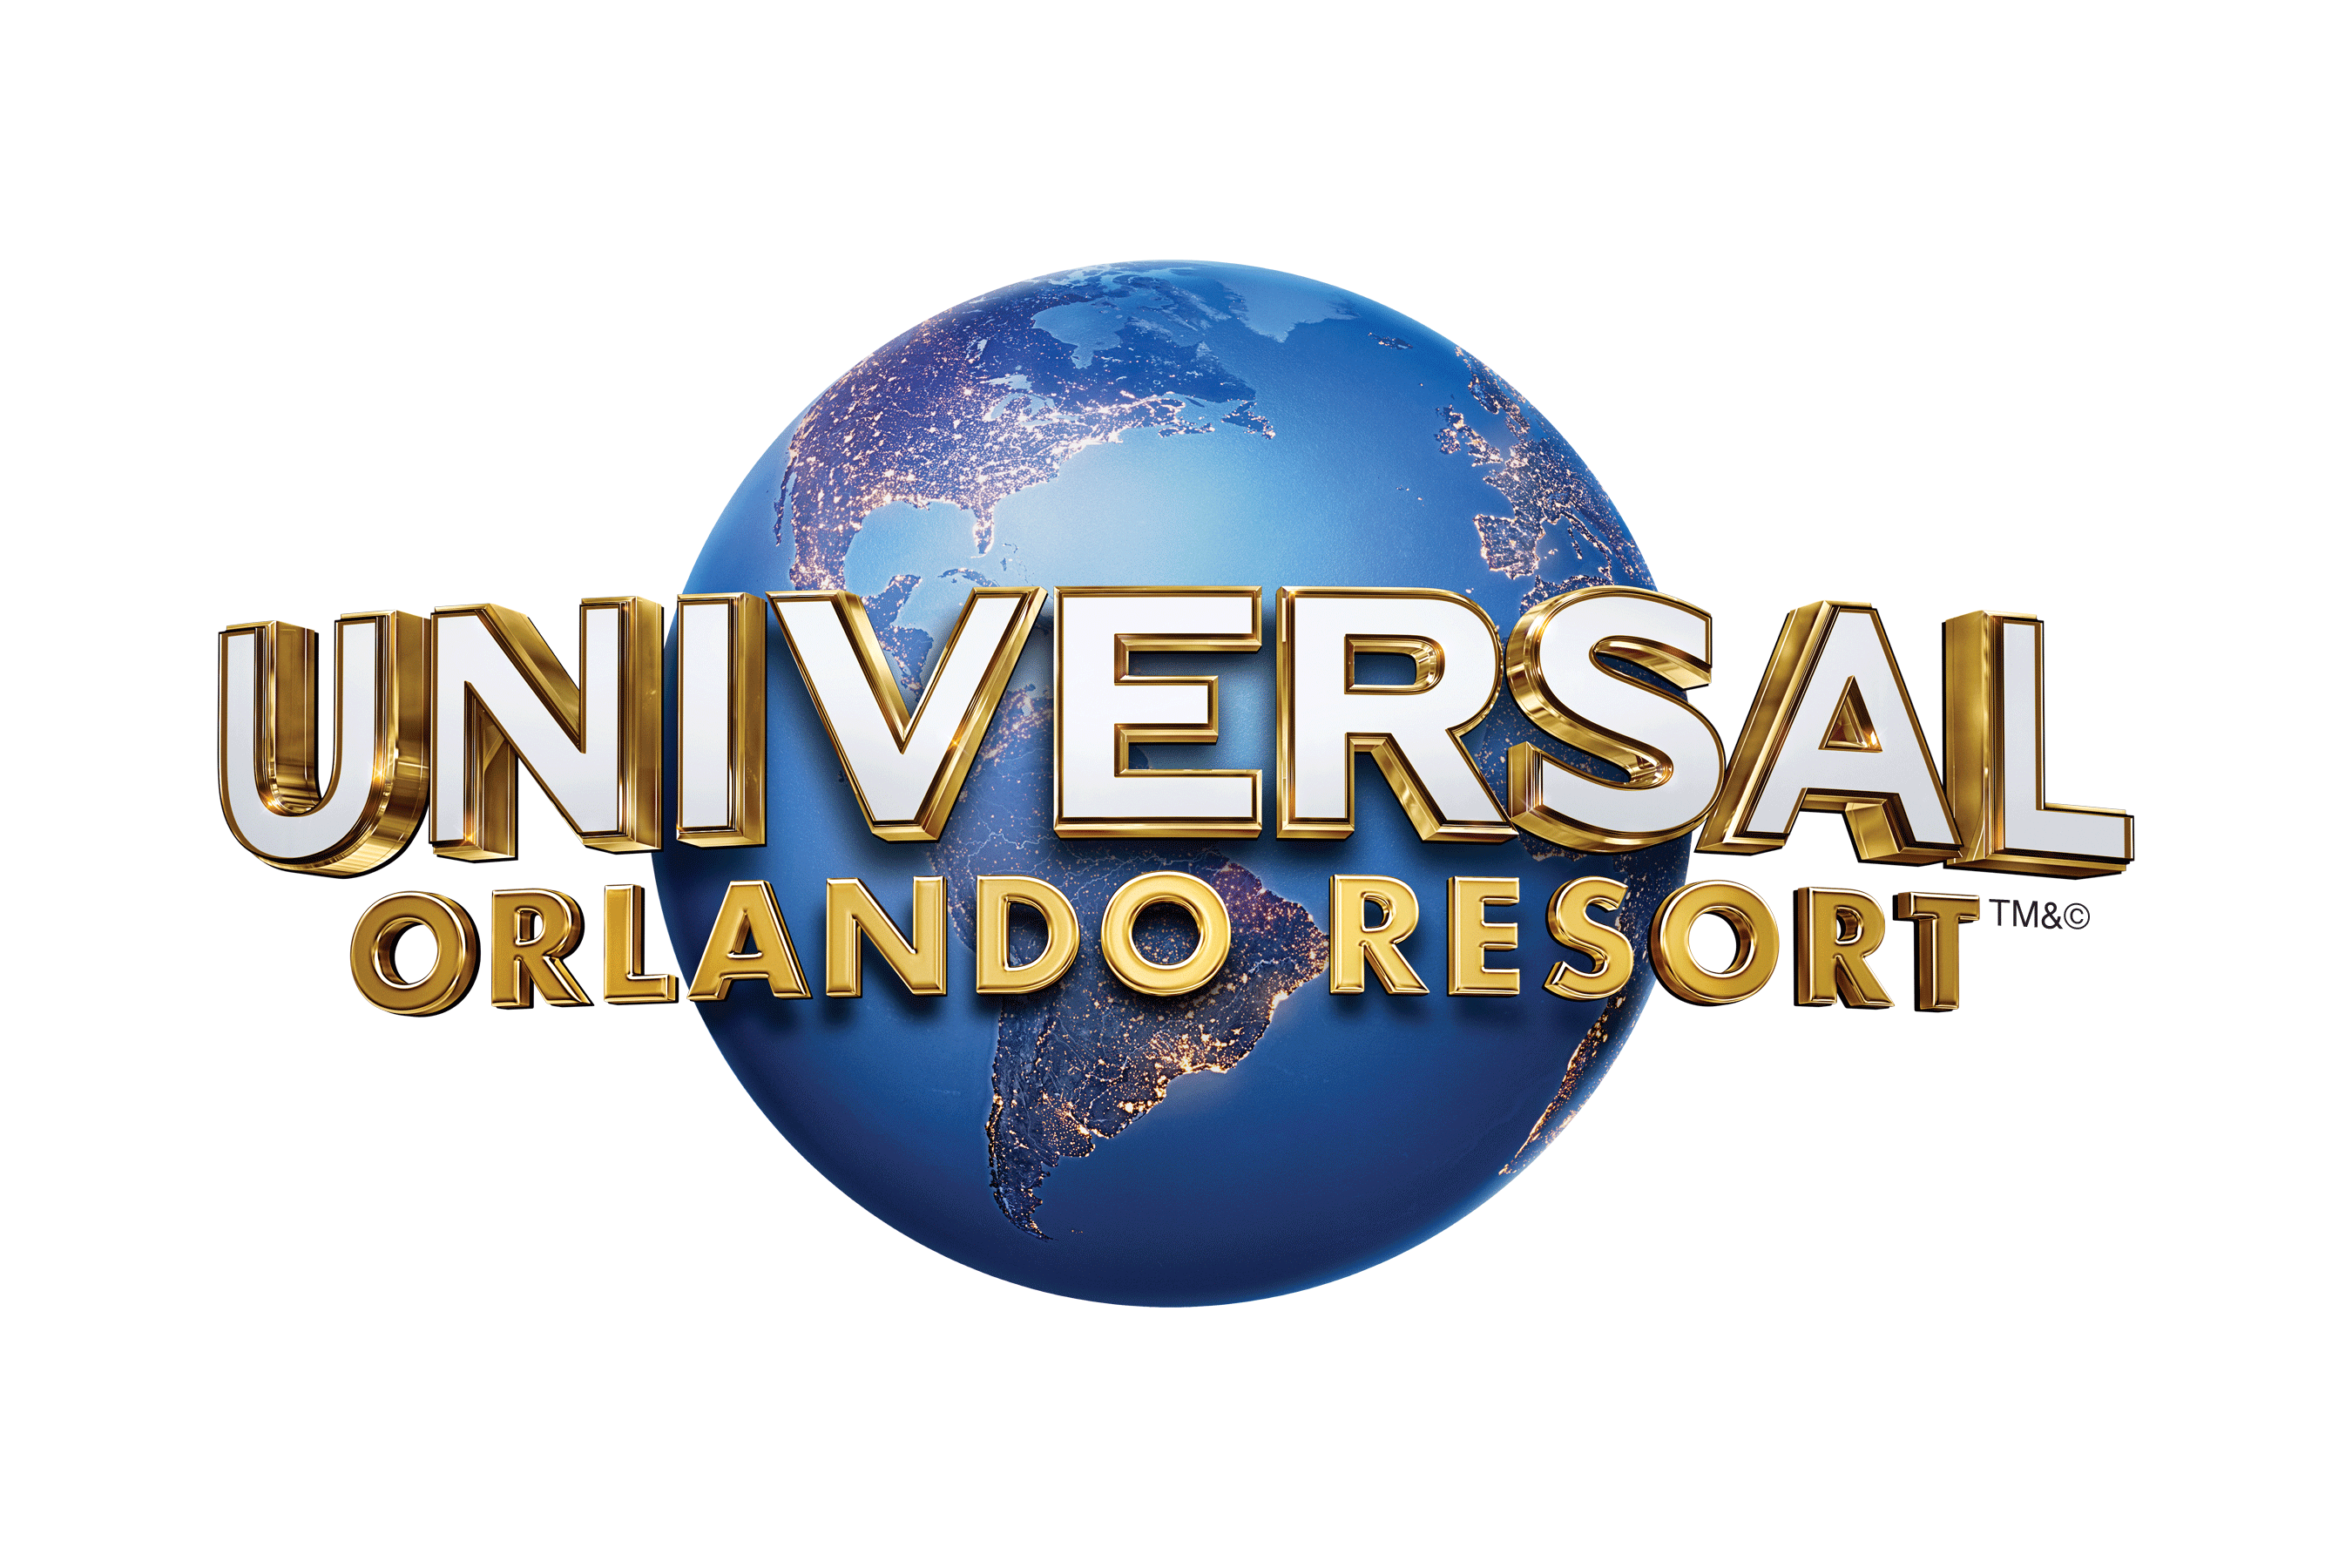 Universal Logo Png